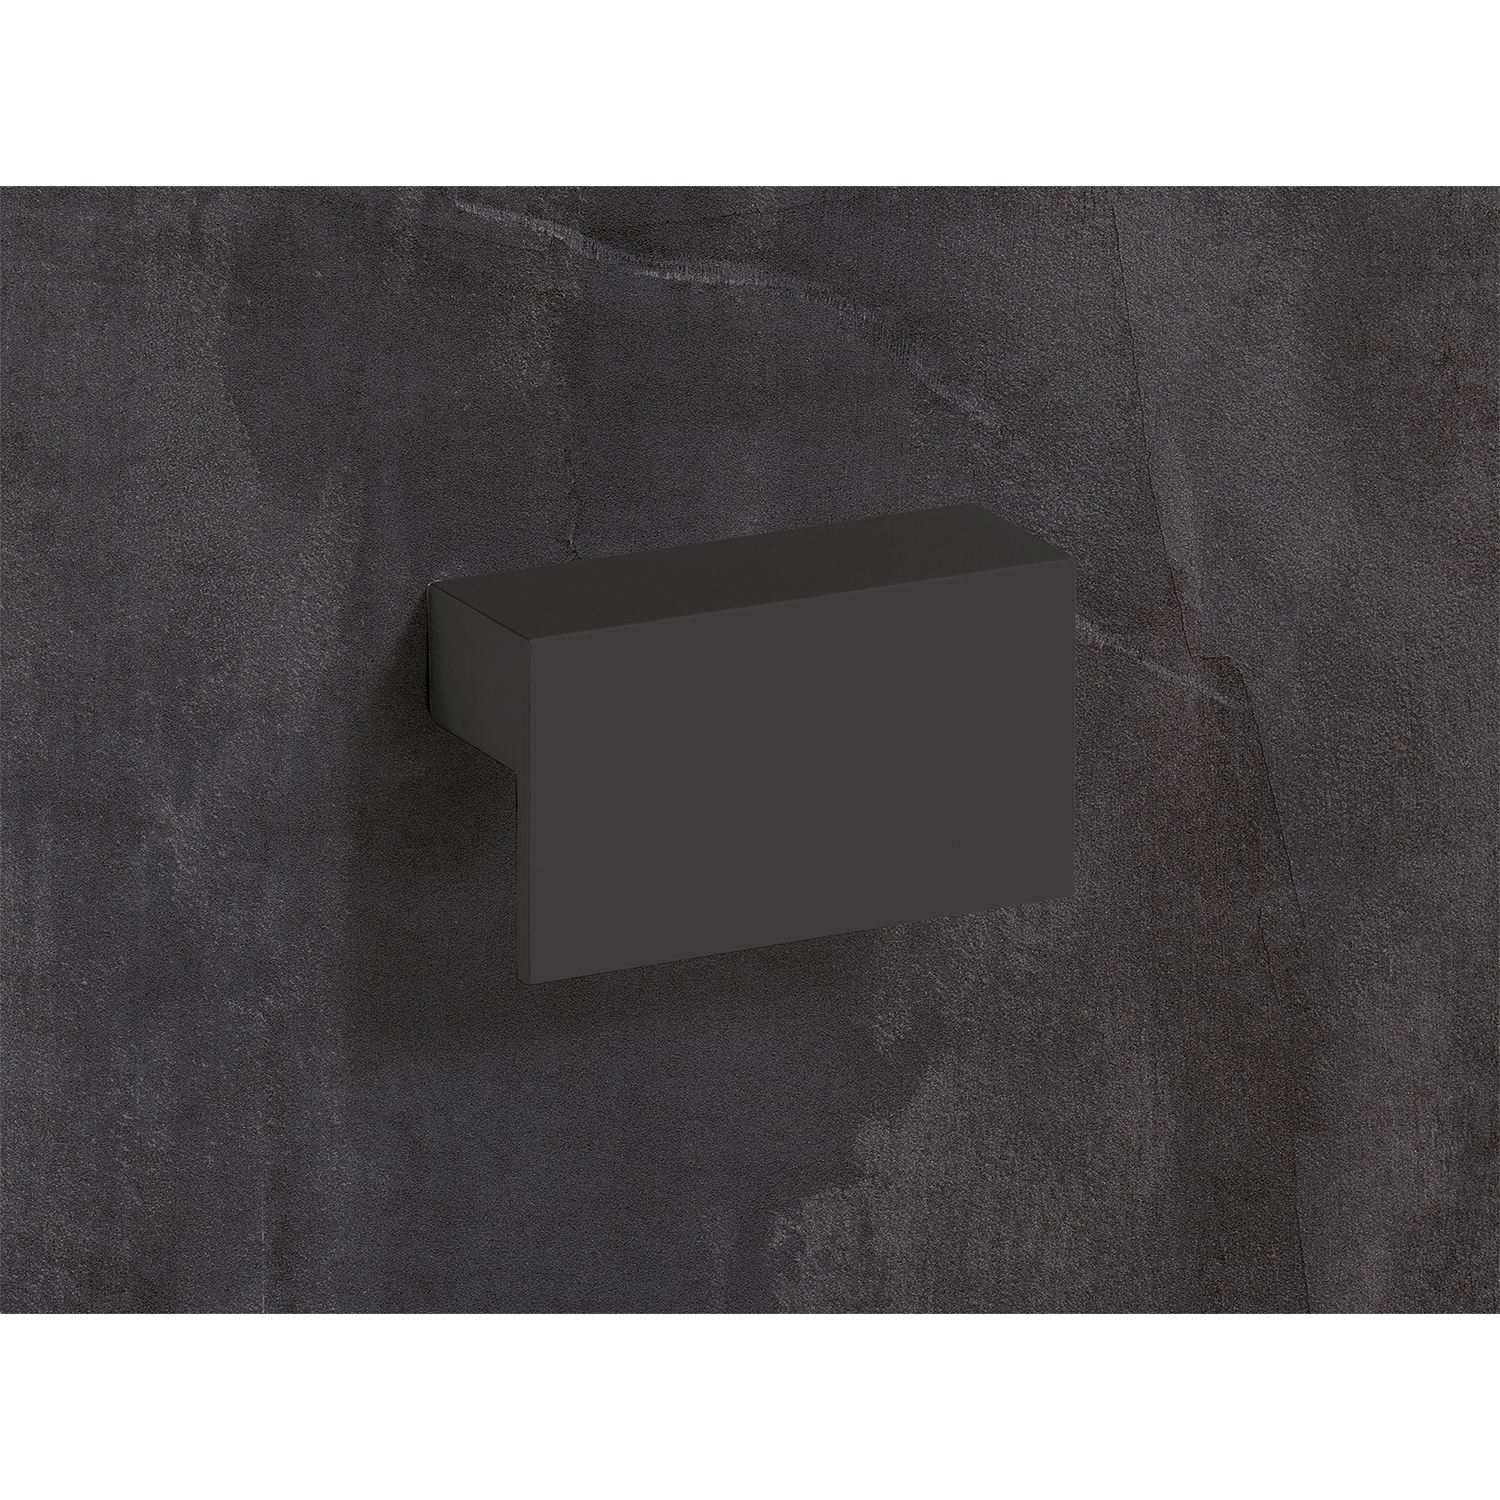 HETTICH Griff Trani, •–• 64, L 84 mm, B 26 mm, H 16 mm, Schwarz matt, 9265950